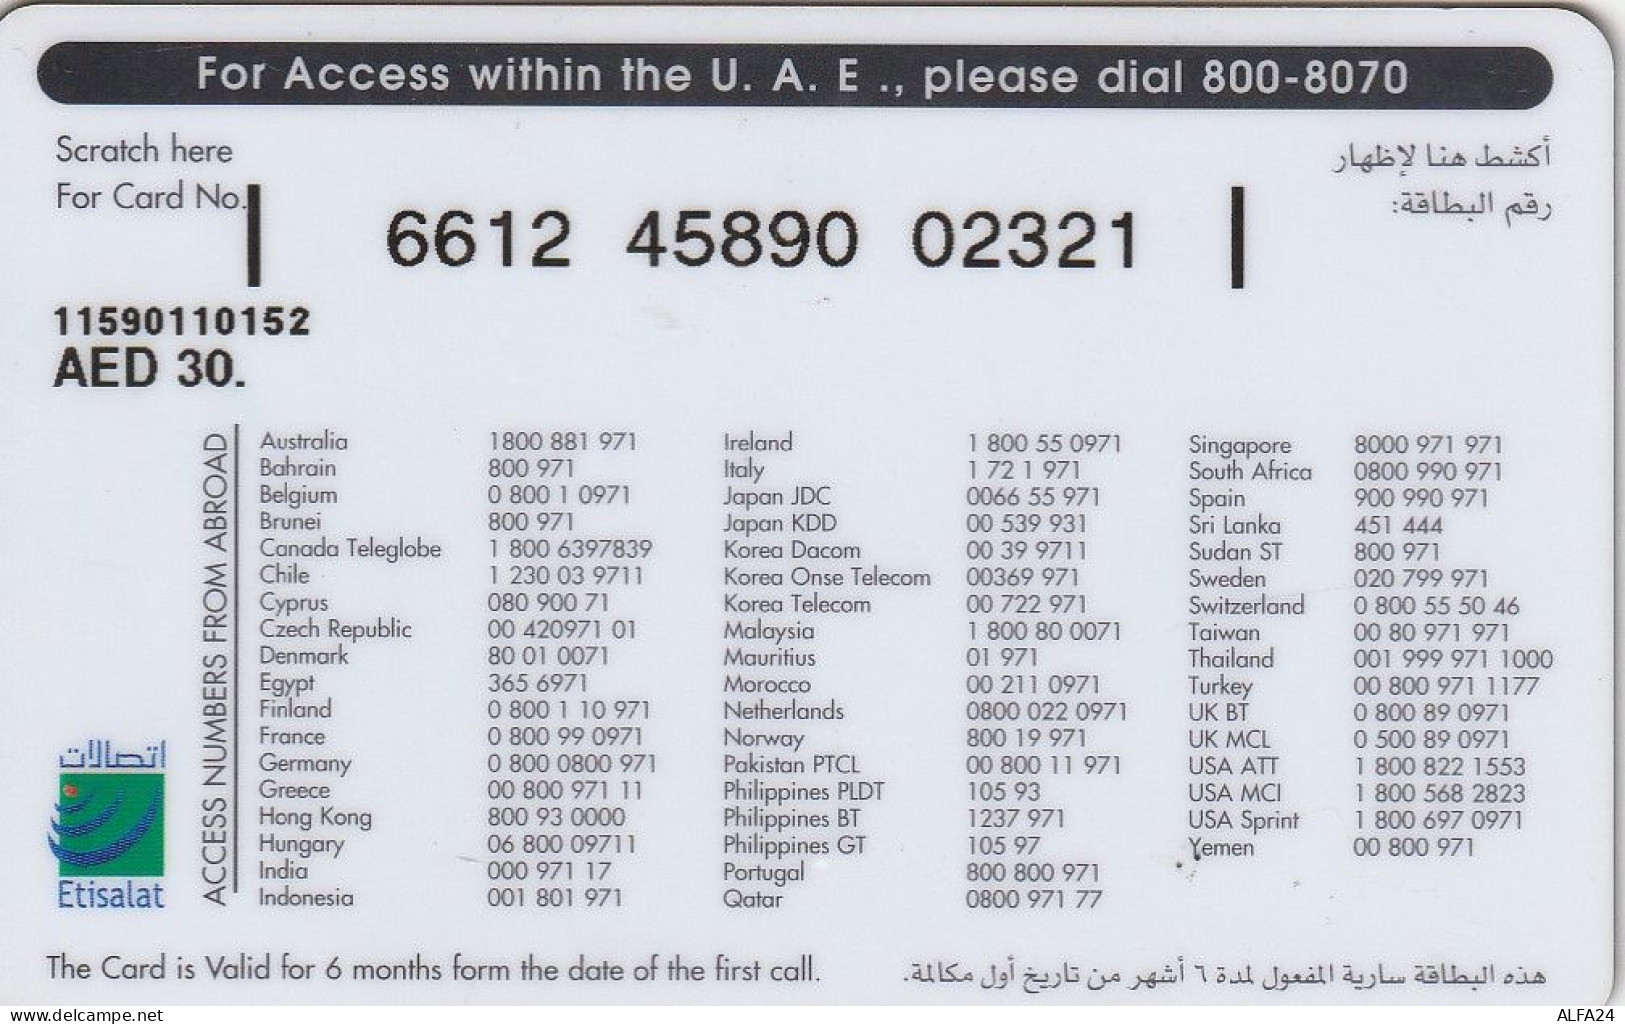 PREPAID PHONE CARD EMIRATI ARABI  (CZ2471 - Ver. Arab. Emirate